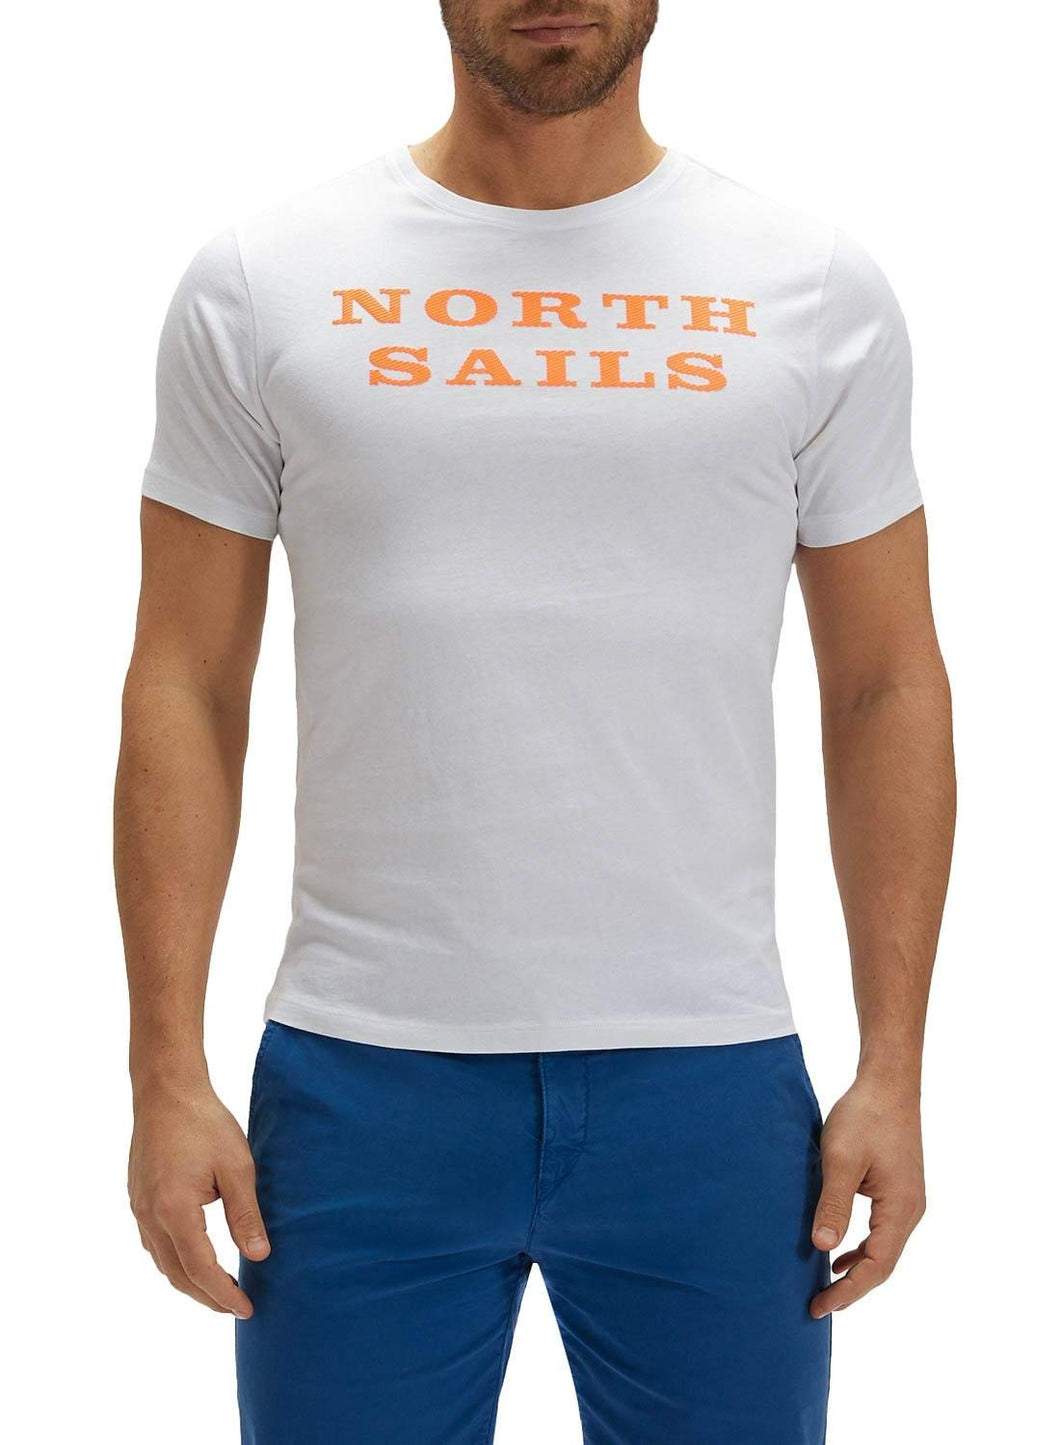 NORTH SAILS T-Shirt da Uomo in Jersey - 100% Cotone Biologico - vestibilità Regolare - Leggera con Girocollo e Maniche Corte